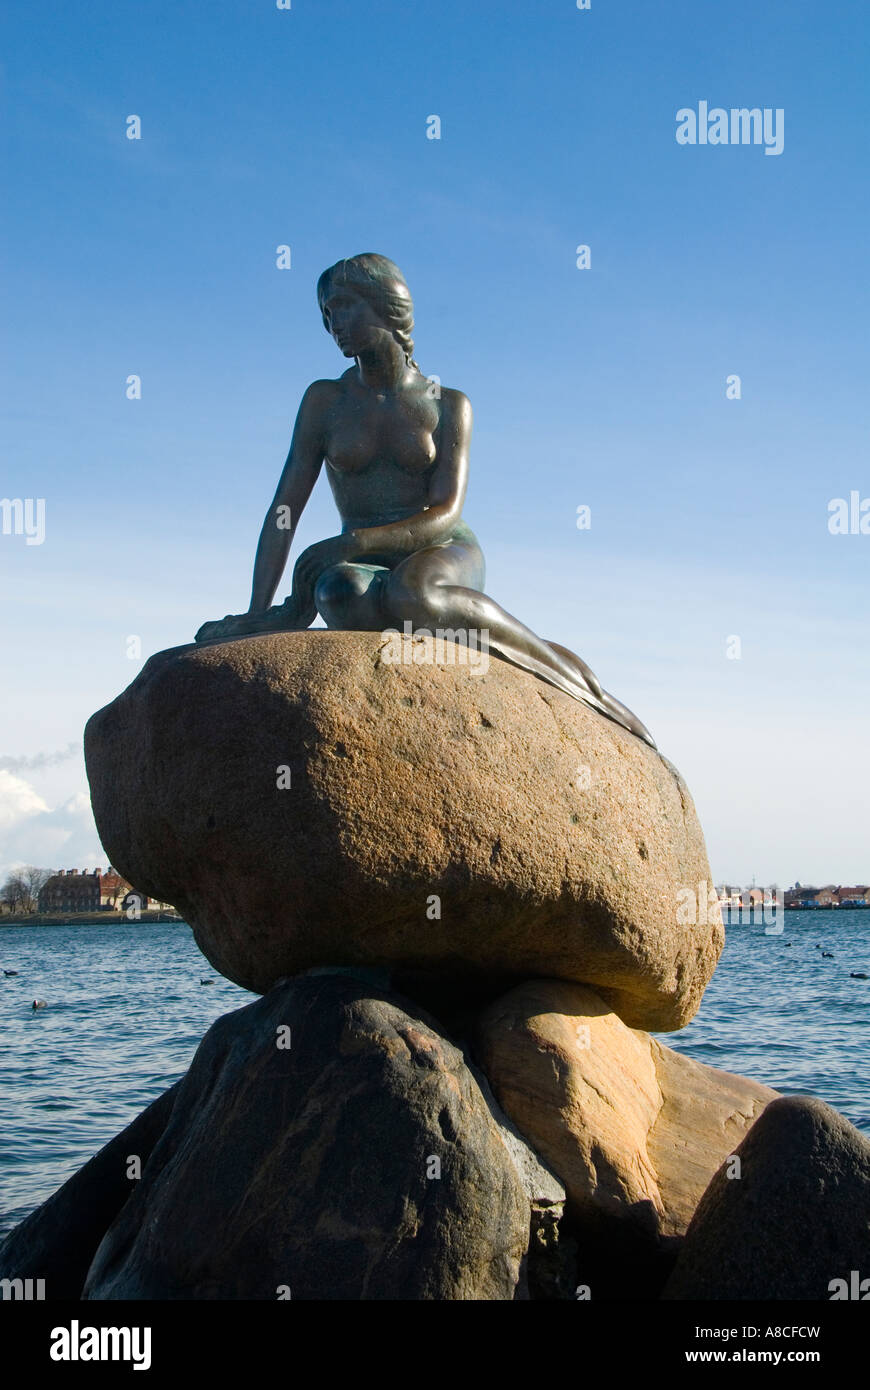 La Statue de la petite sirène de Copenhague Danemark Banque D'Images